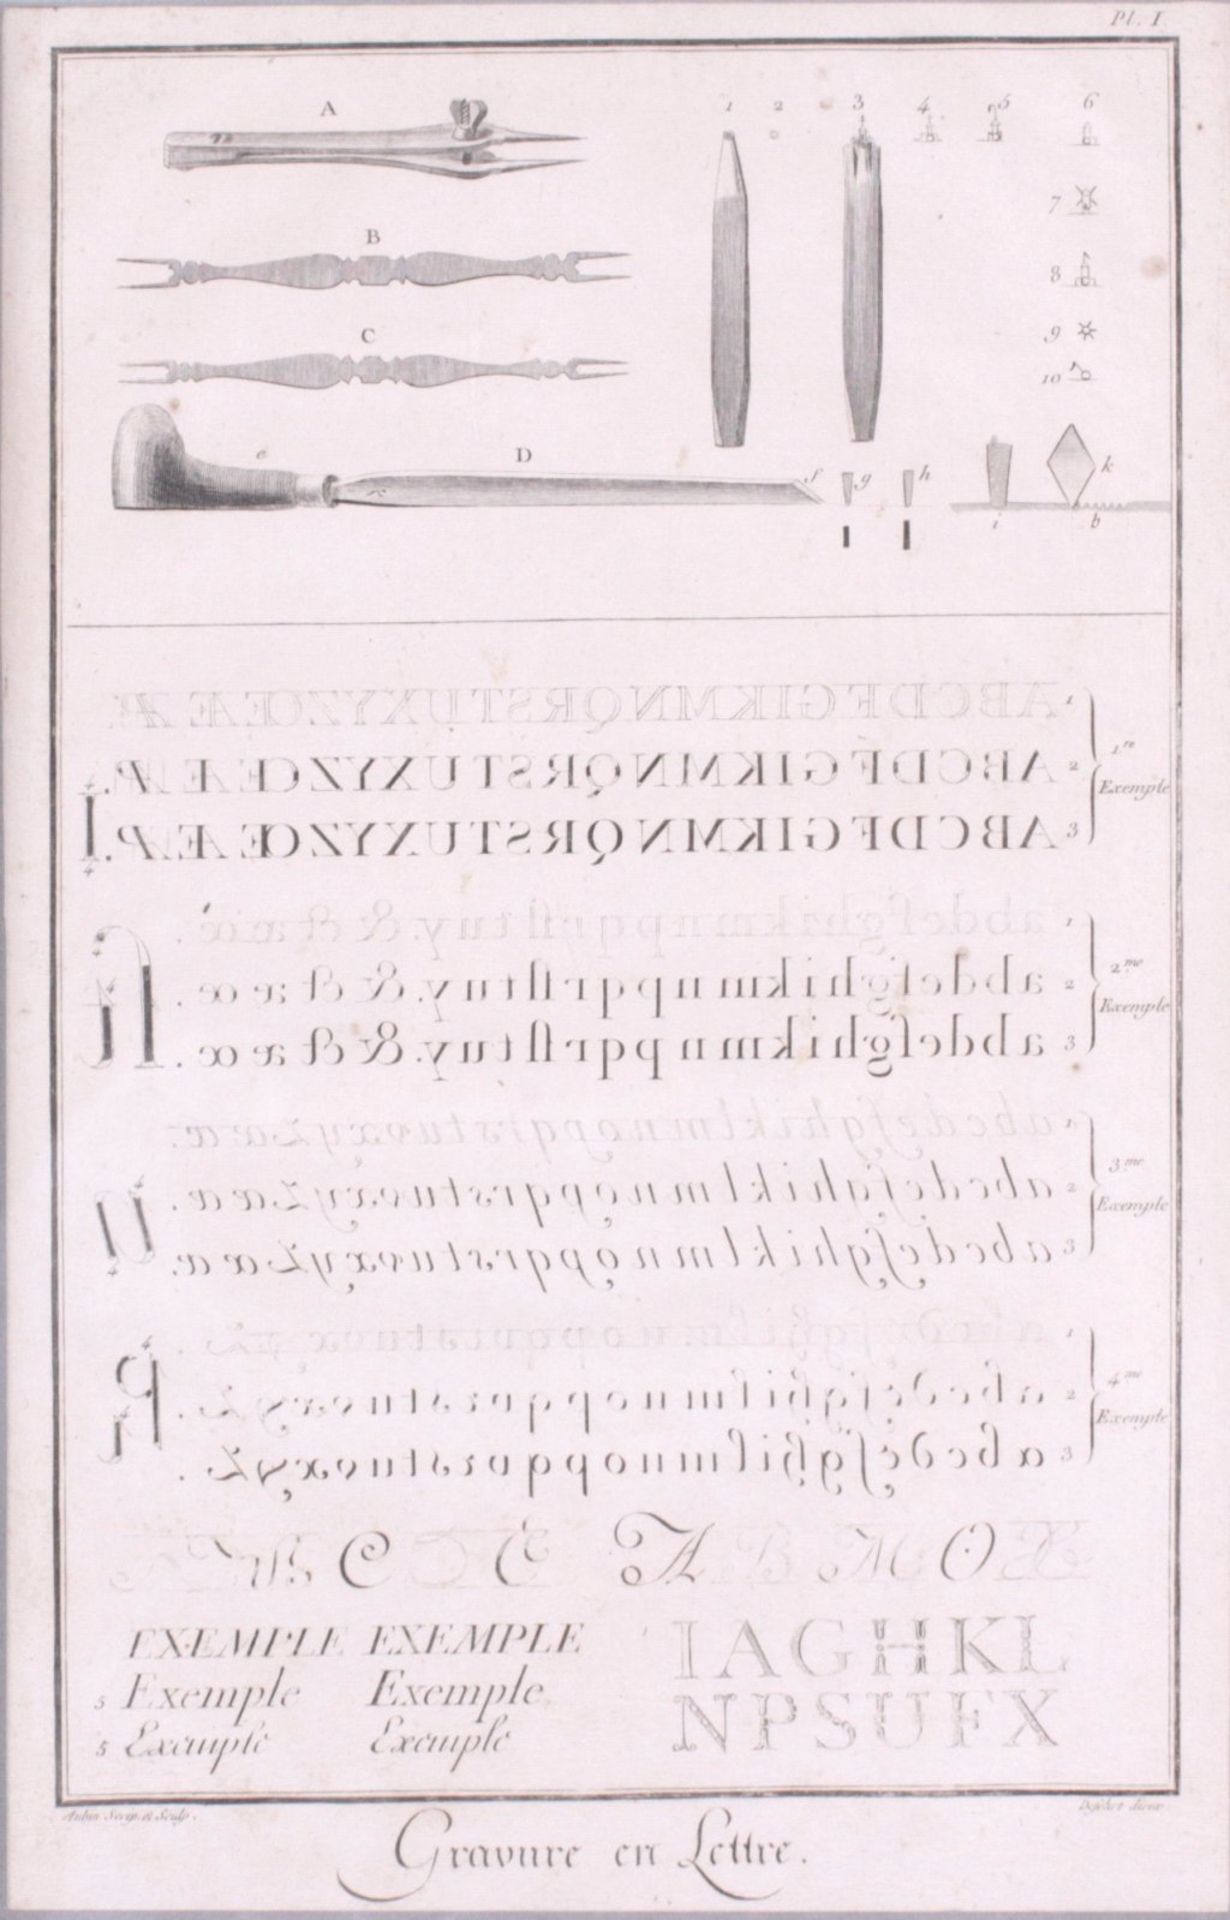 Kupferstich aus dem 18. Jh. von DefehrtGravure en Lettre, Blatt Nr. 1, ohne Beschädigung,